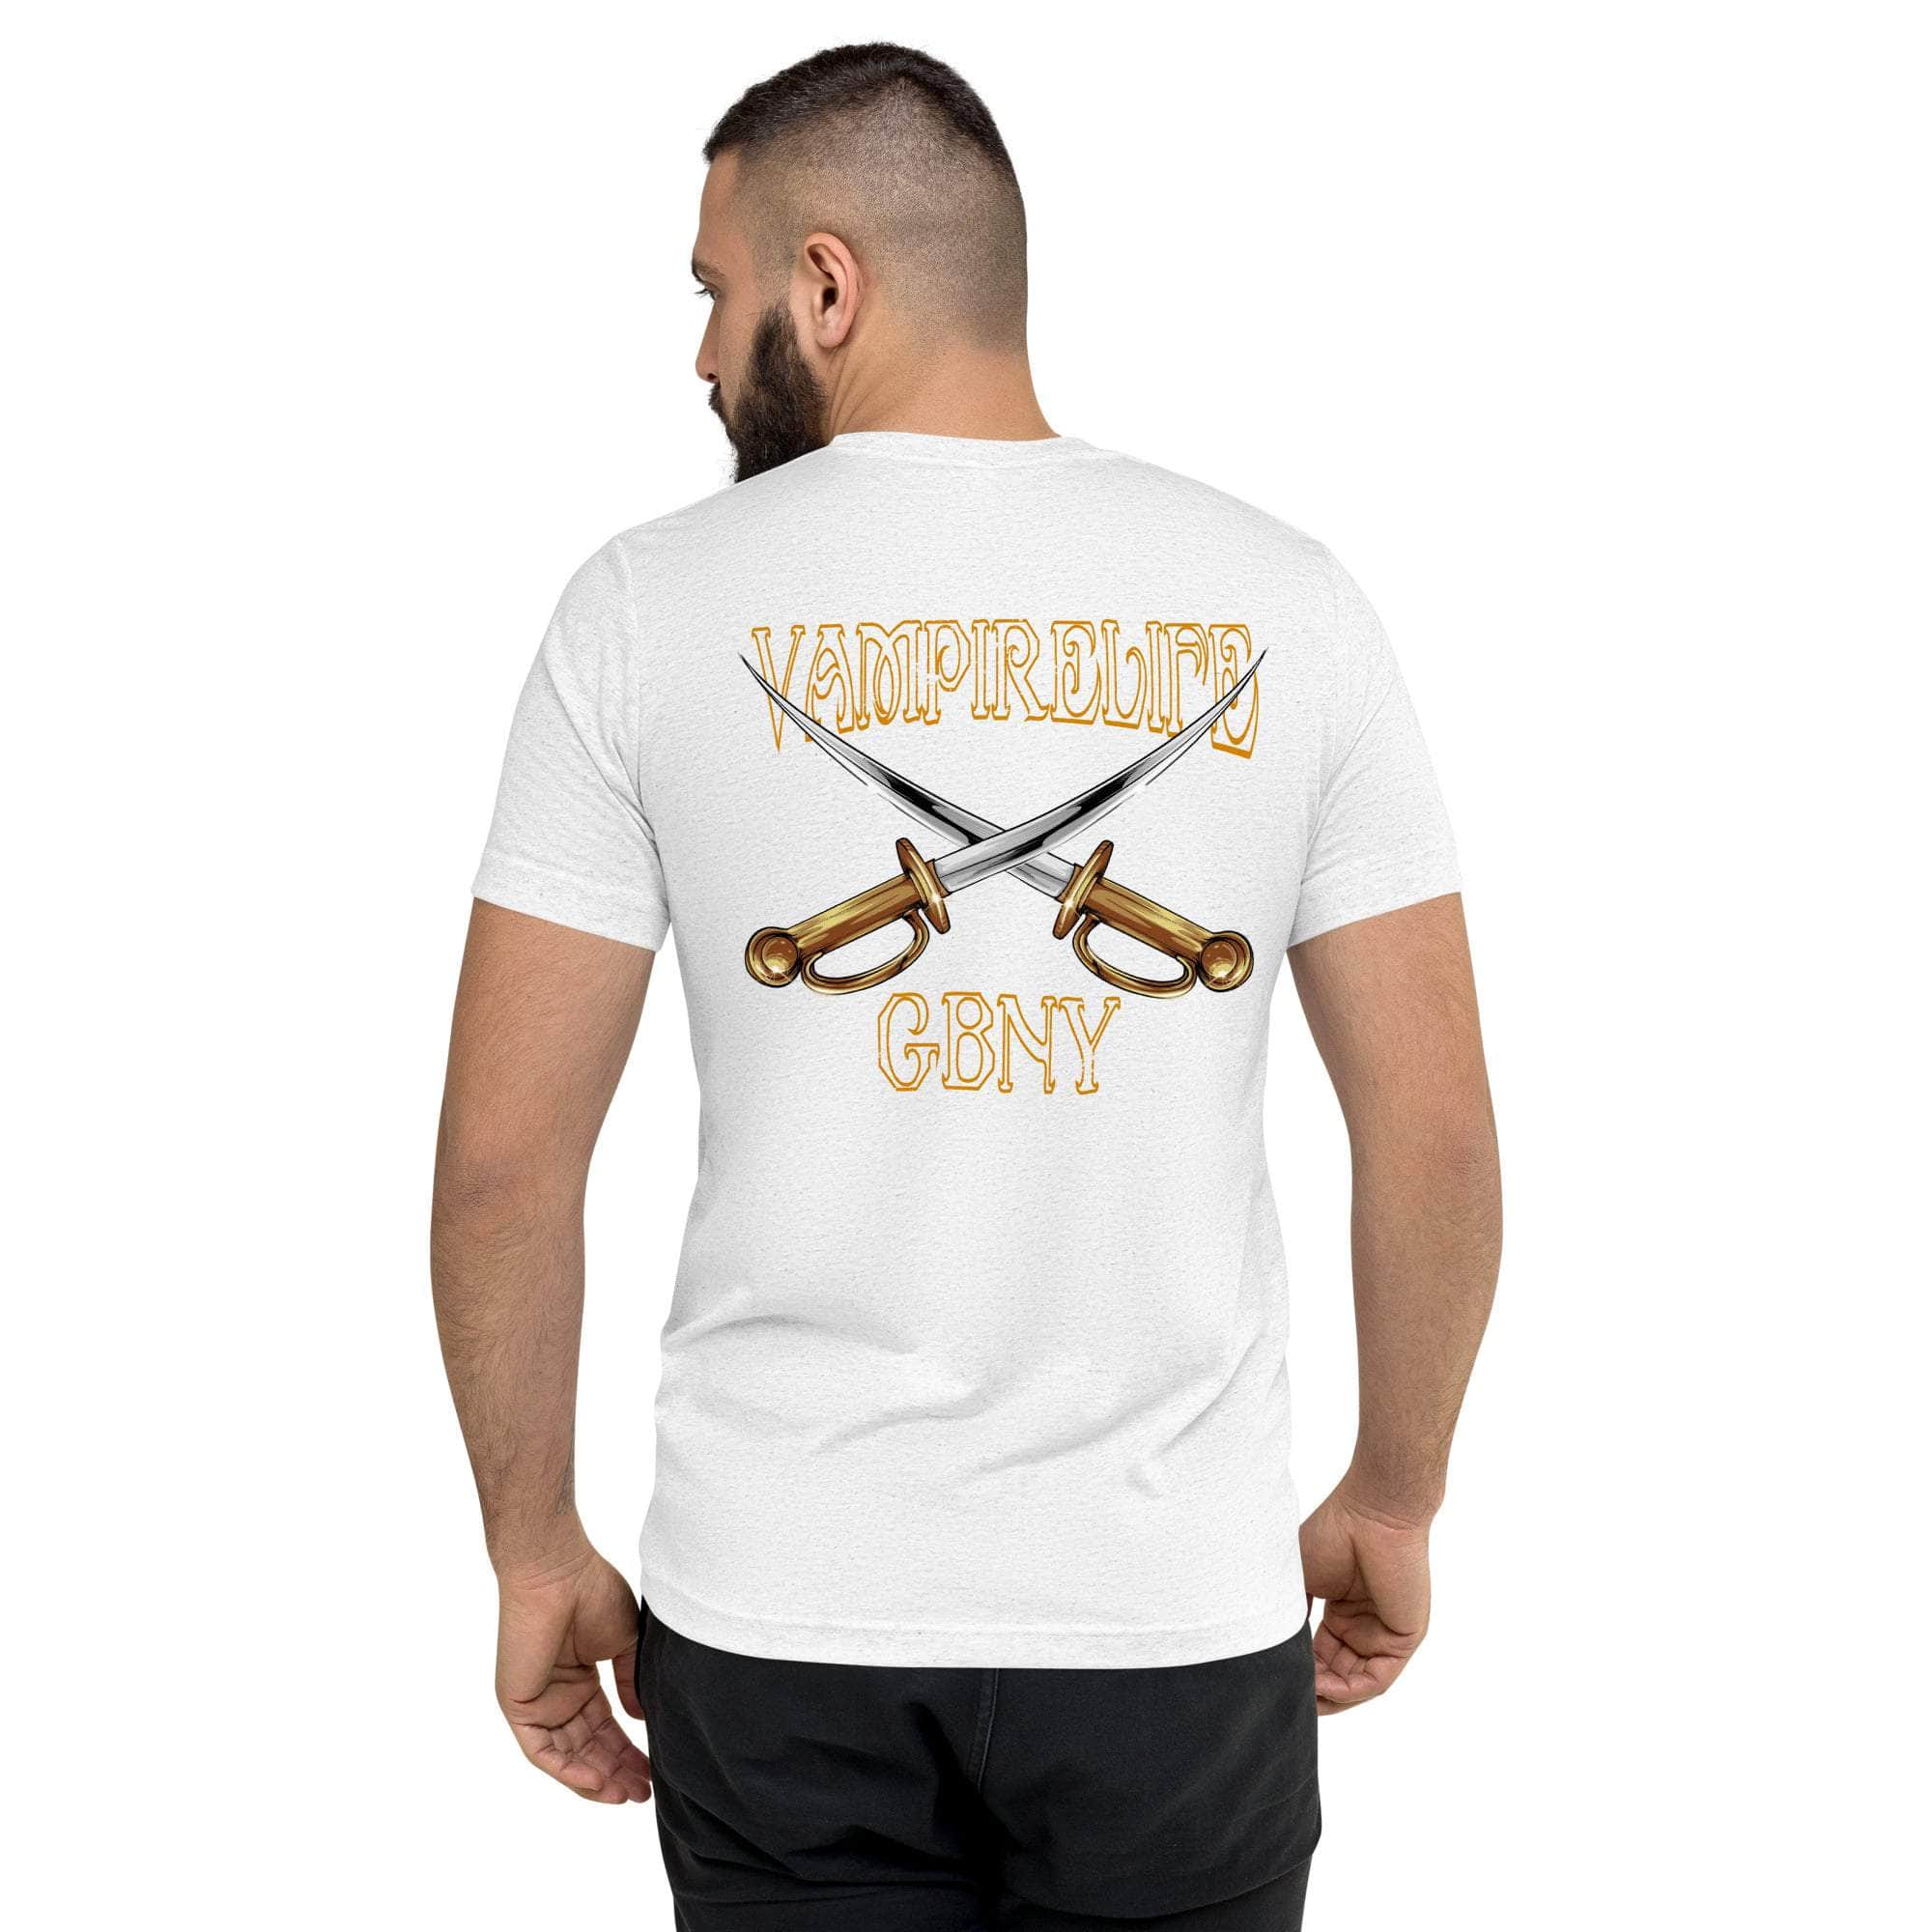 GBNY Vamp Life X GBNY "Cross Swords" T-shirt - Men's